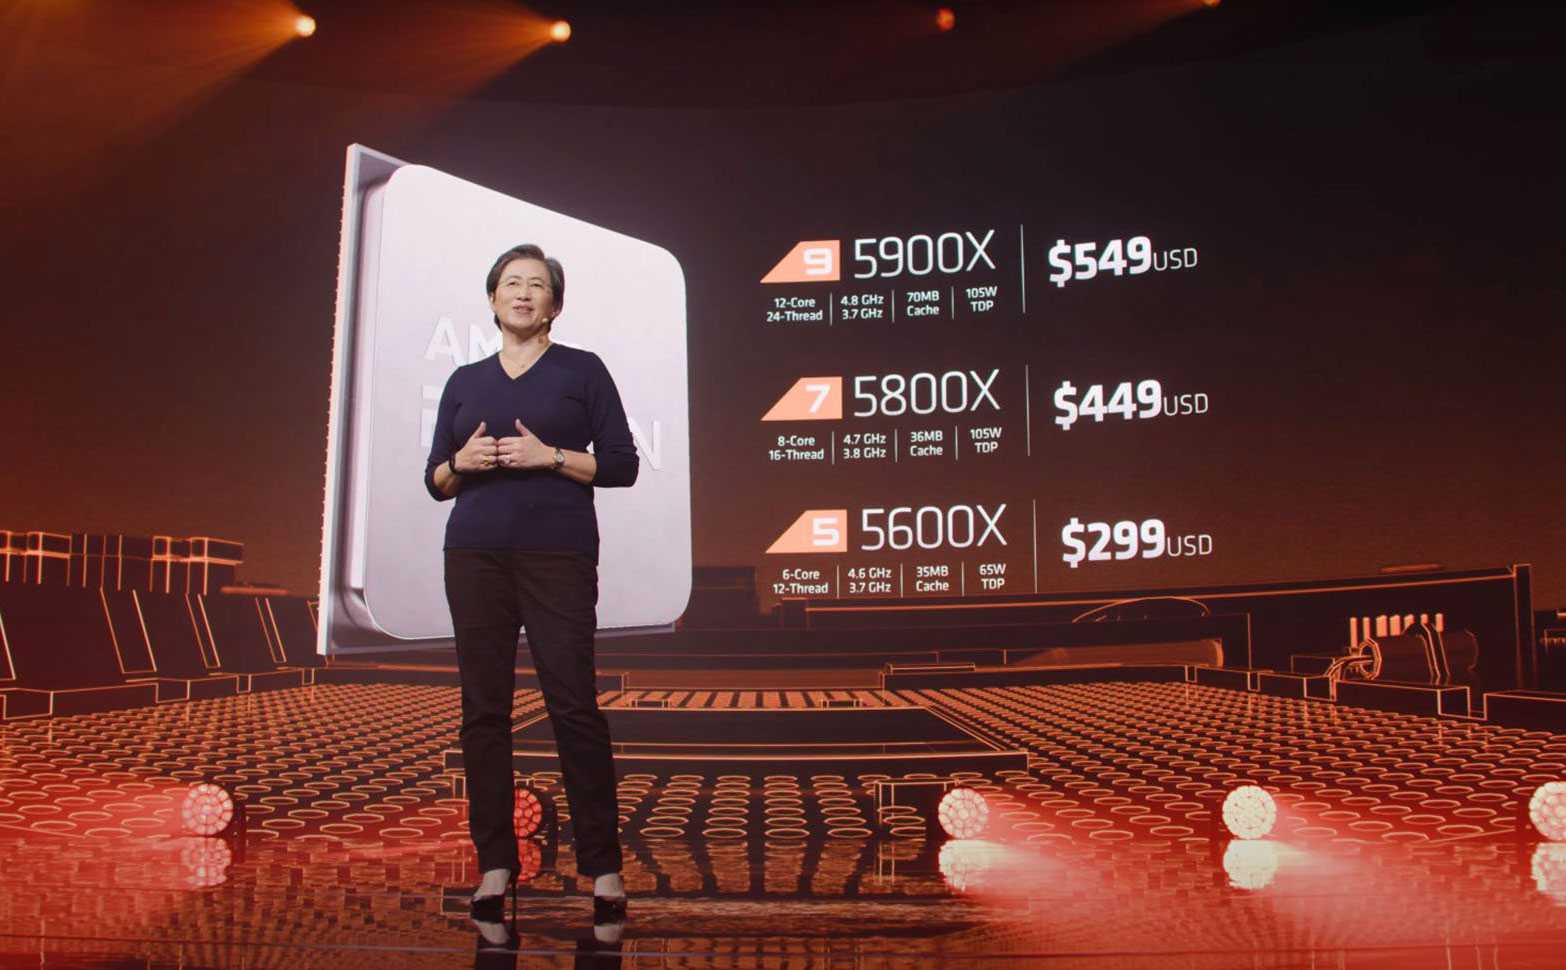 Tổng hợp thông tin AMD Ryzen 5000: giá tiền, hiệu năng, mạnh hơn Intel?